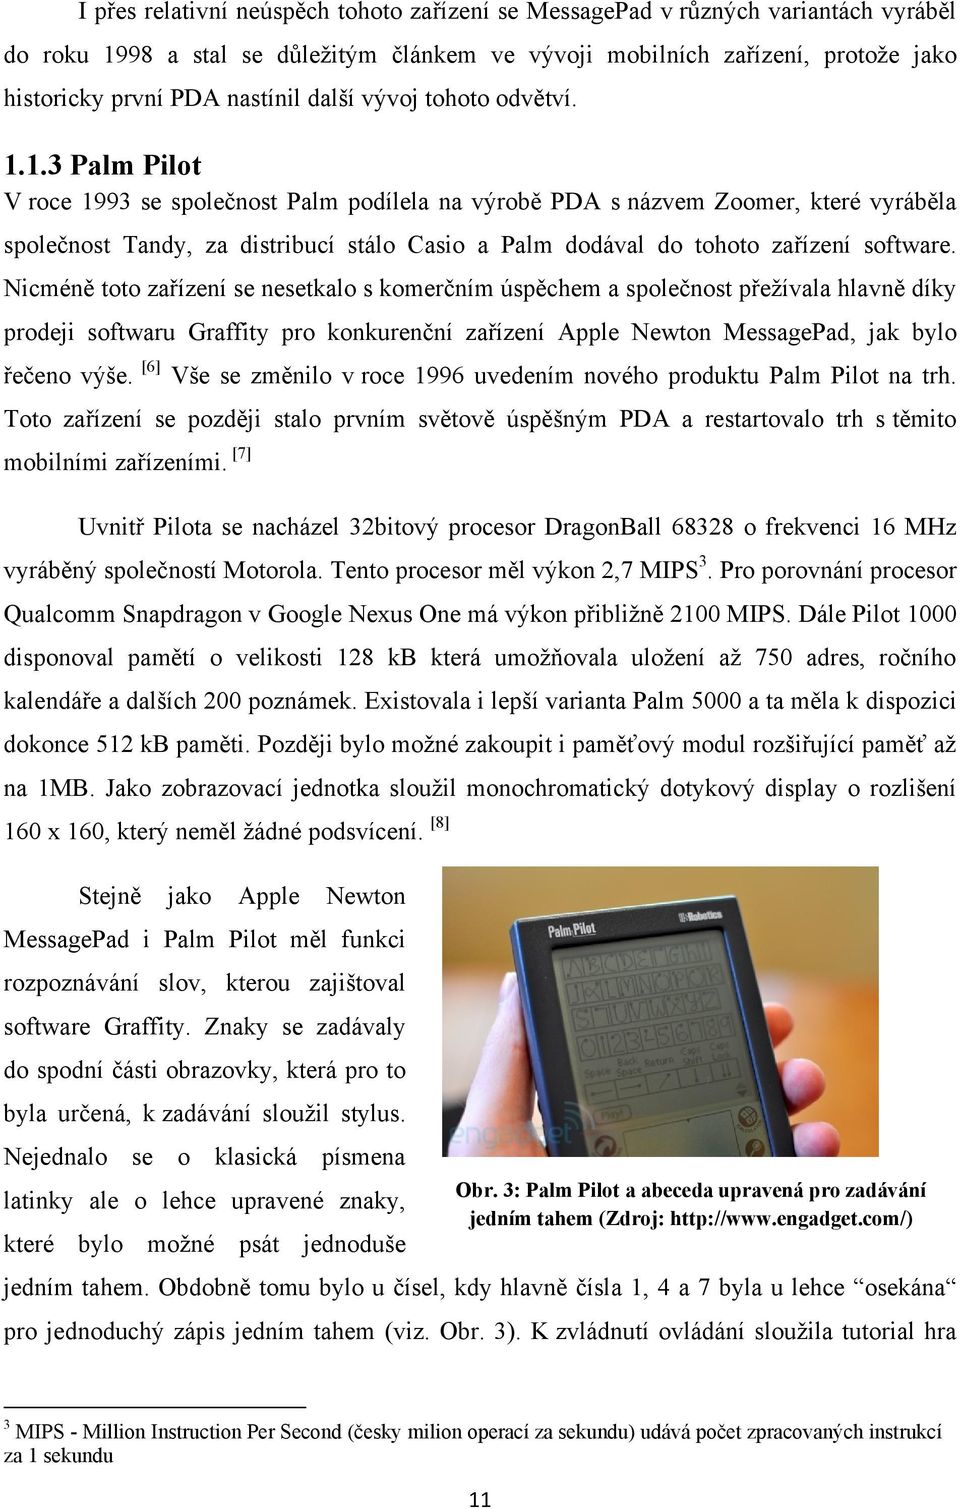 1.3 Palm Pilot V roce 1993 se společnost Palm podílela na výrobě PDA s názvem Zoomer, které vyráběla společnost Tandy, za distribucí stálo Casio a Palm dodával do tohoto zařízení software.